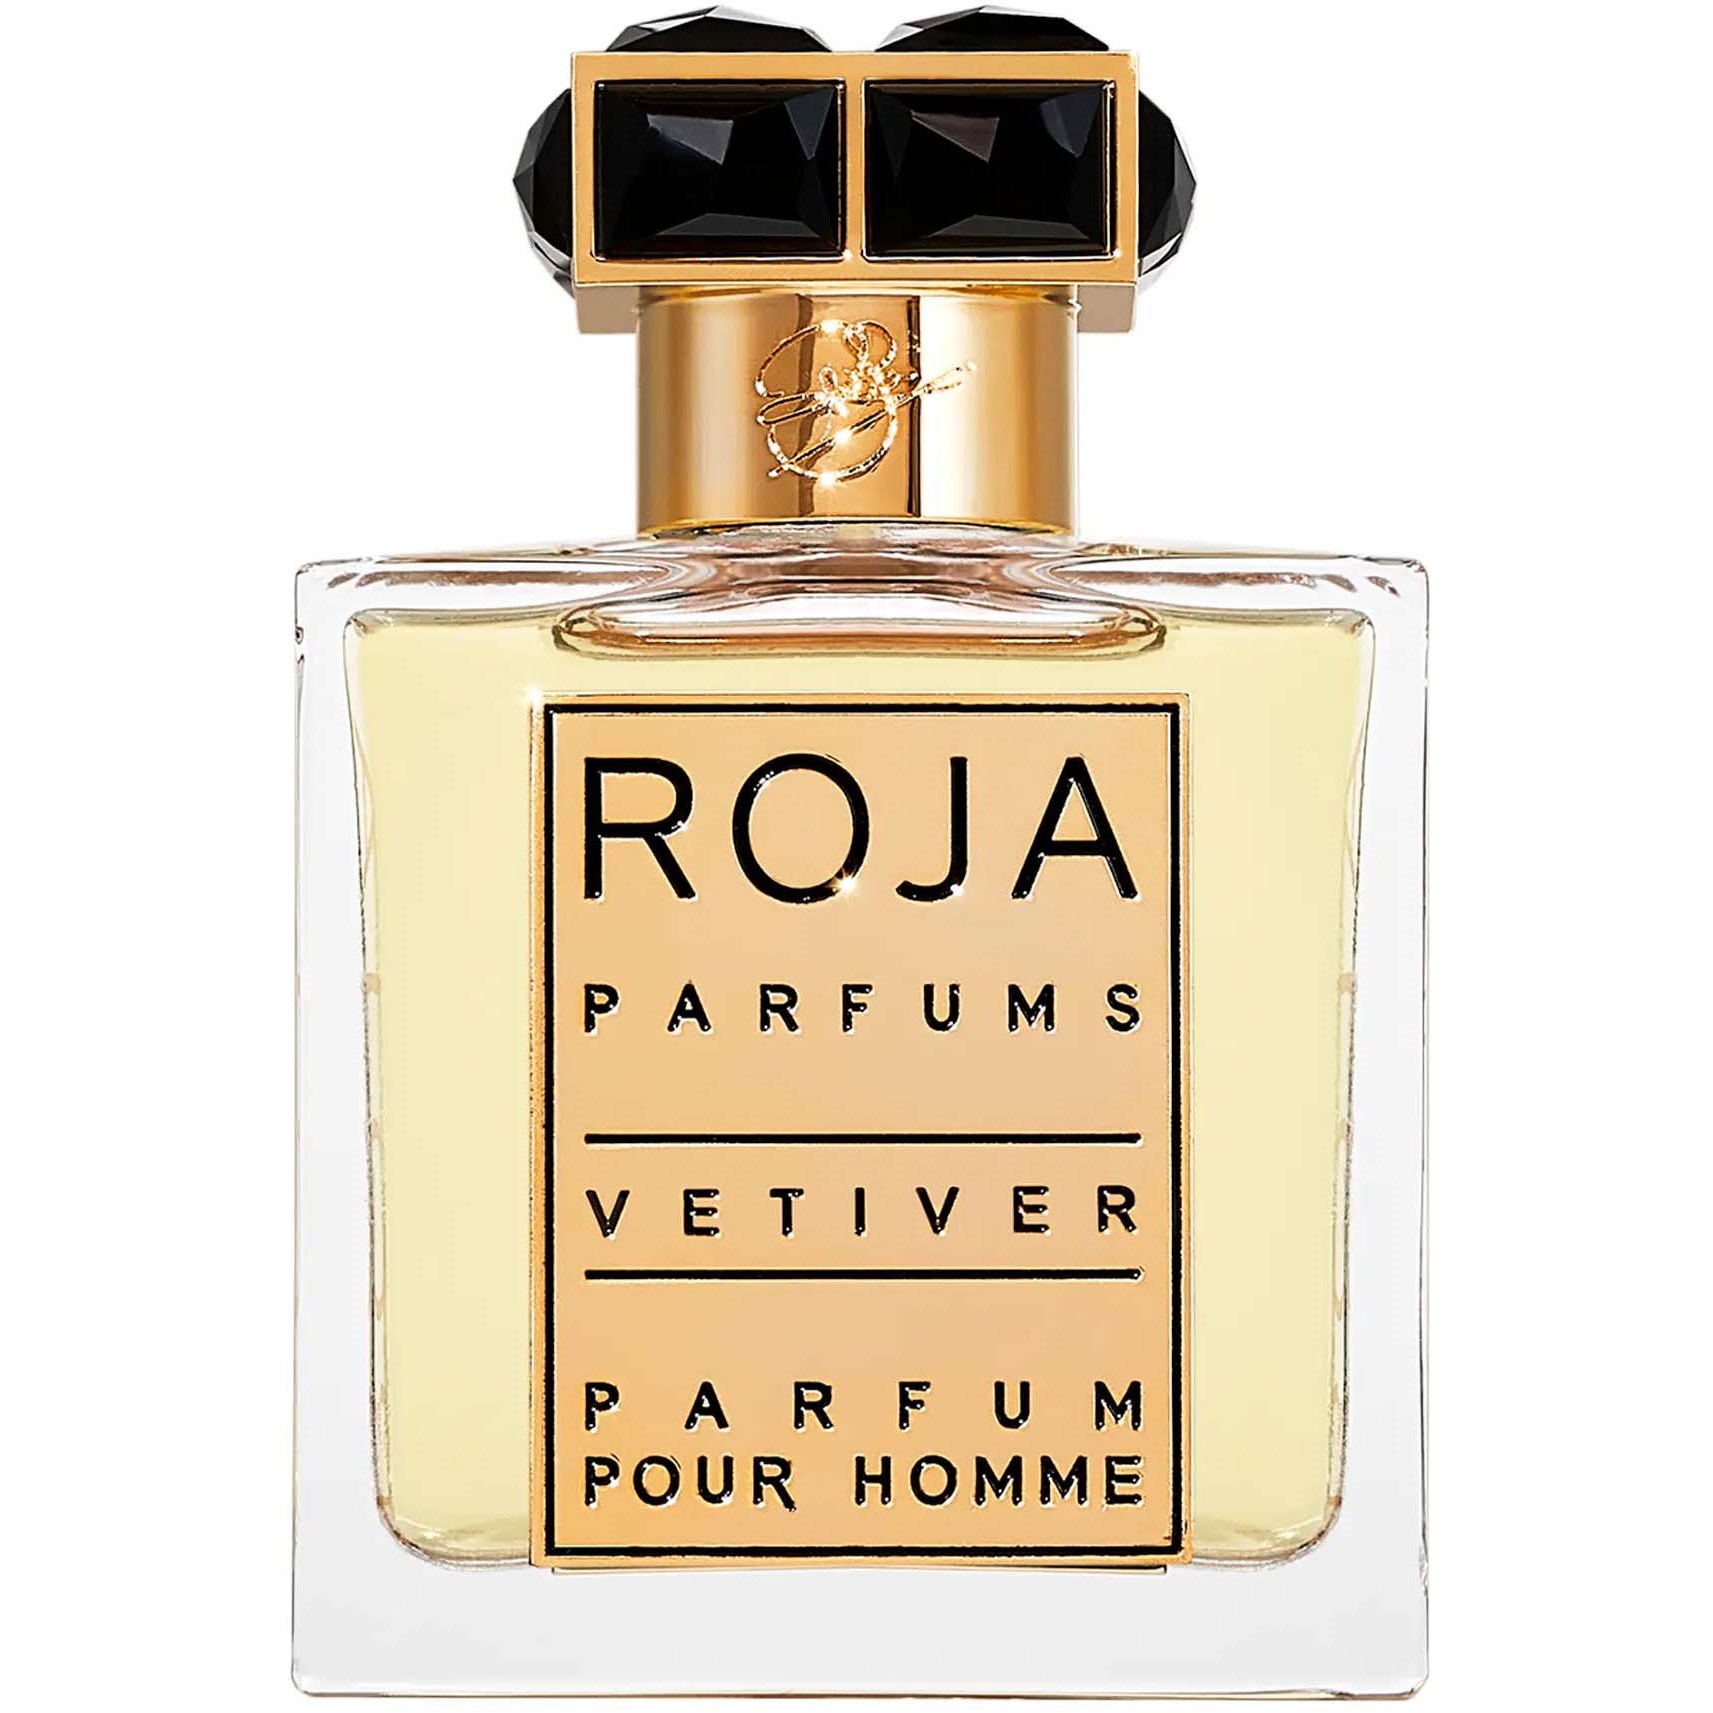 ROJA PARFUMS Vetiver Pour Homme Parfum 50 ml